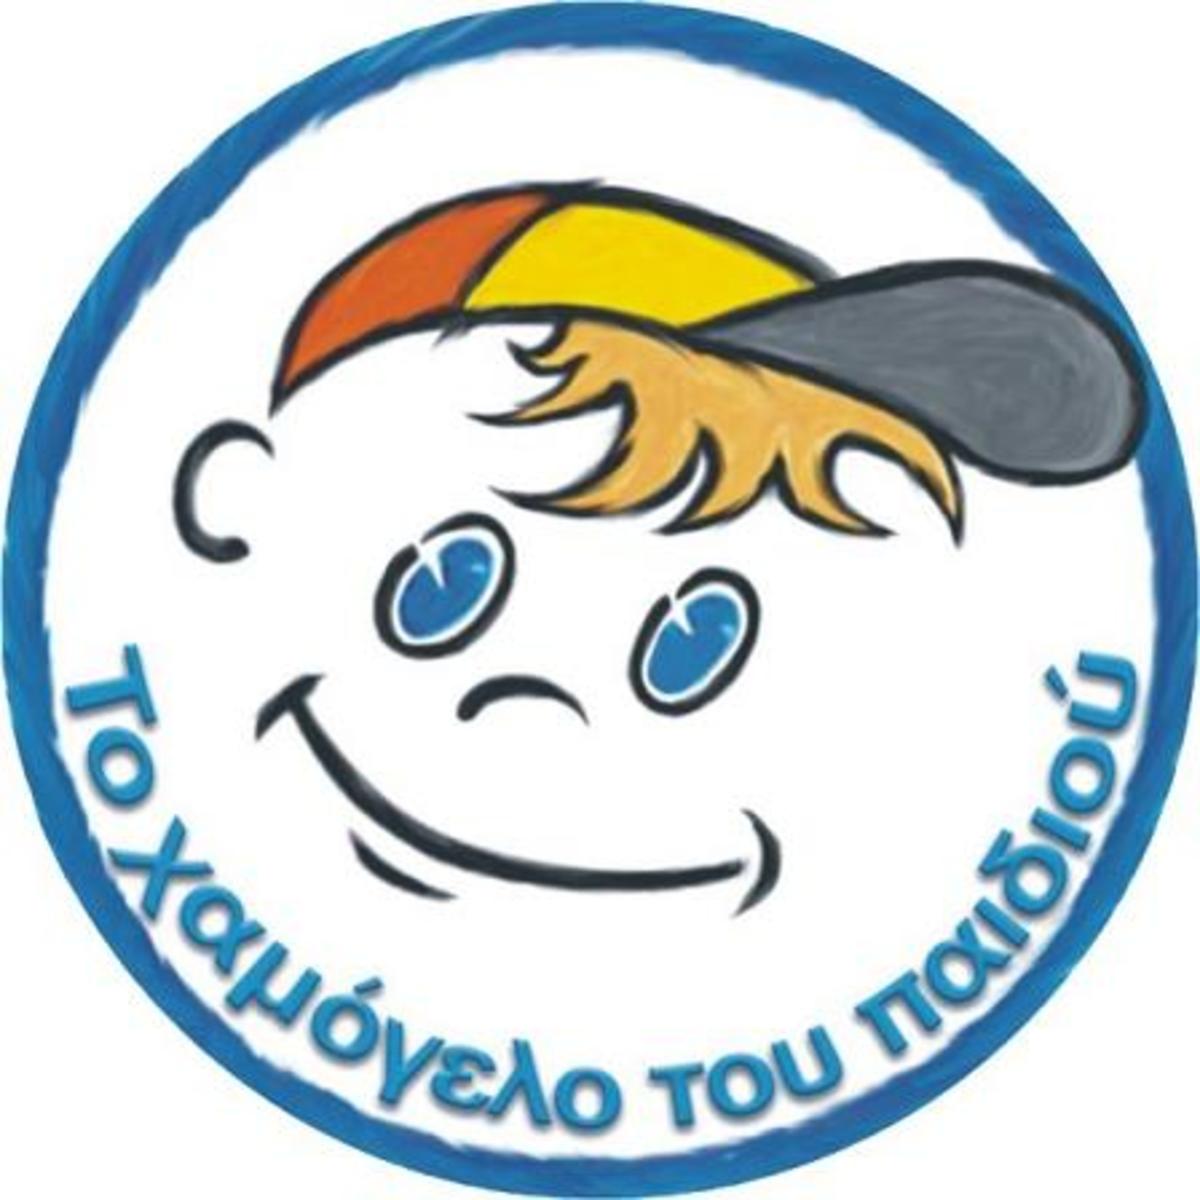 Θεσσαλονίκη: ”Βοηθήστε να μην παγώσει το Χαμόγελο του Παιδιού”